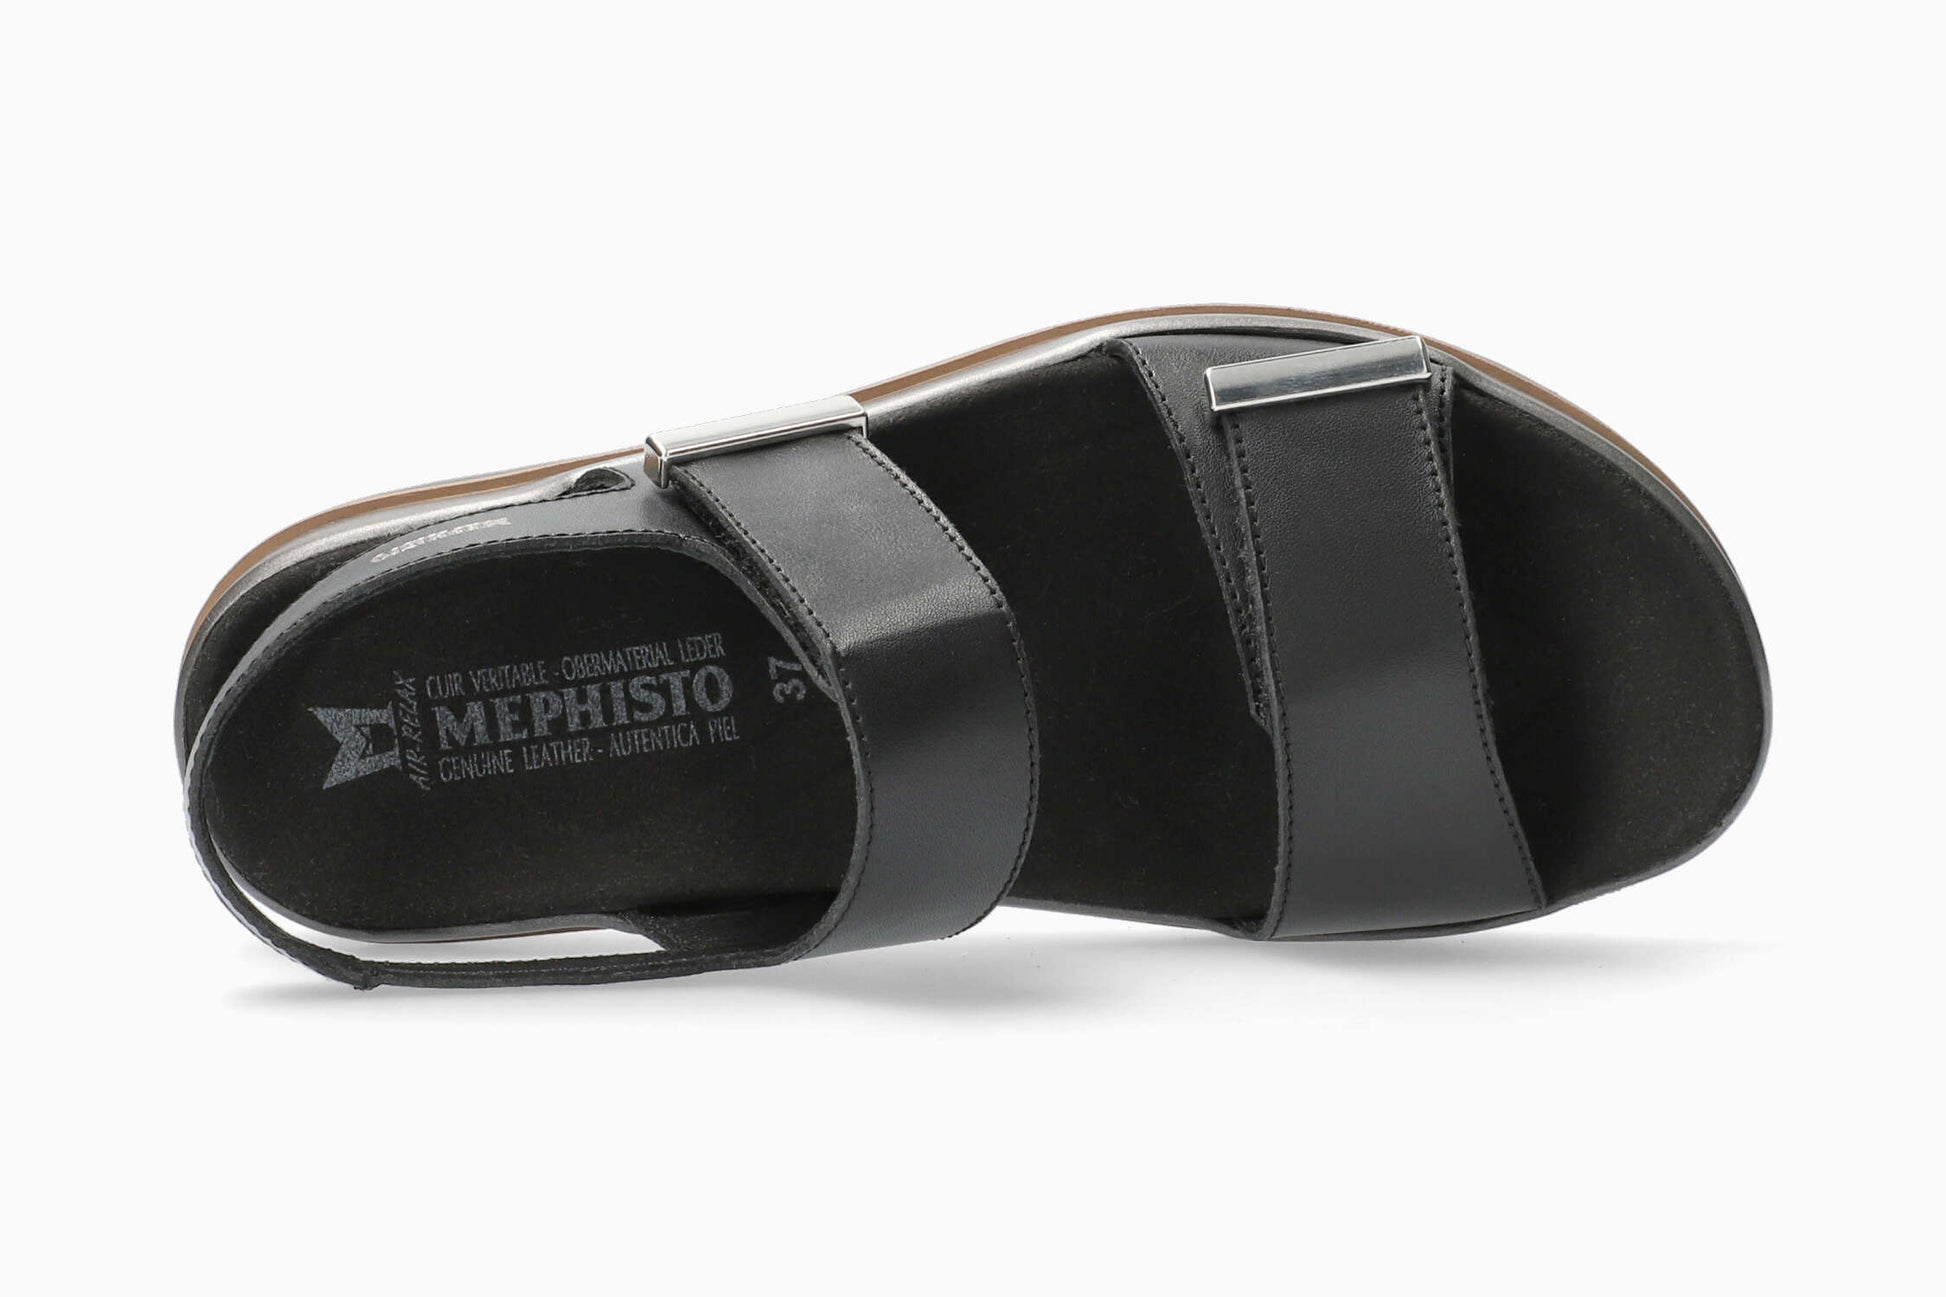 Dominica Mephisto Women's Sandals Black Top